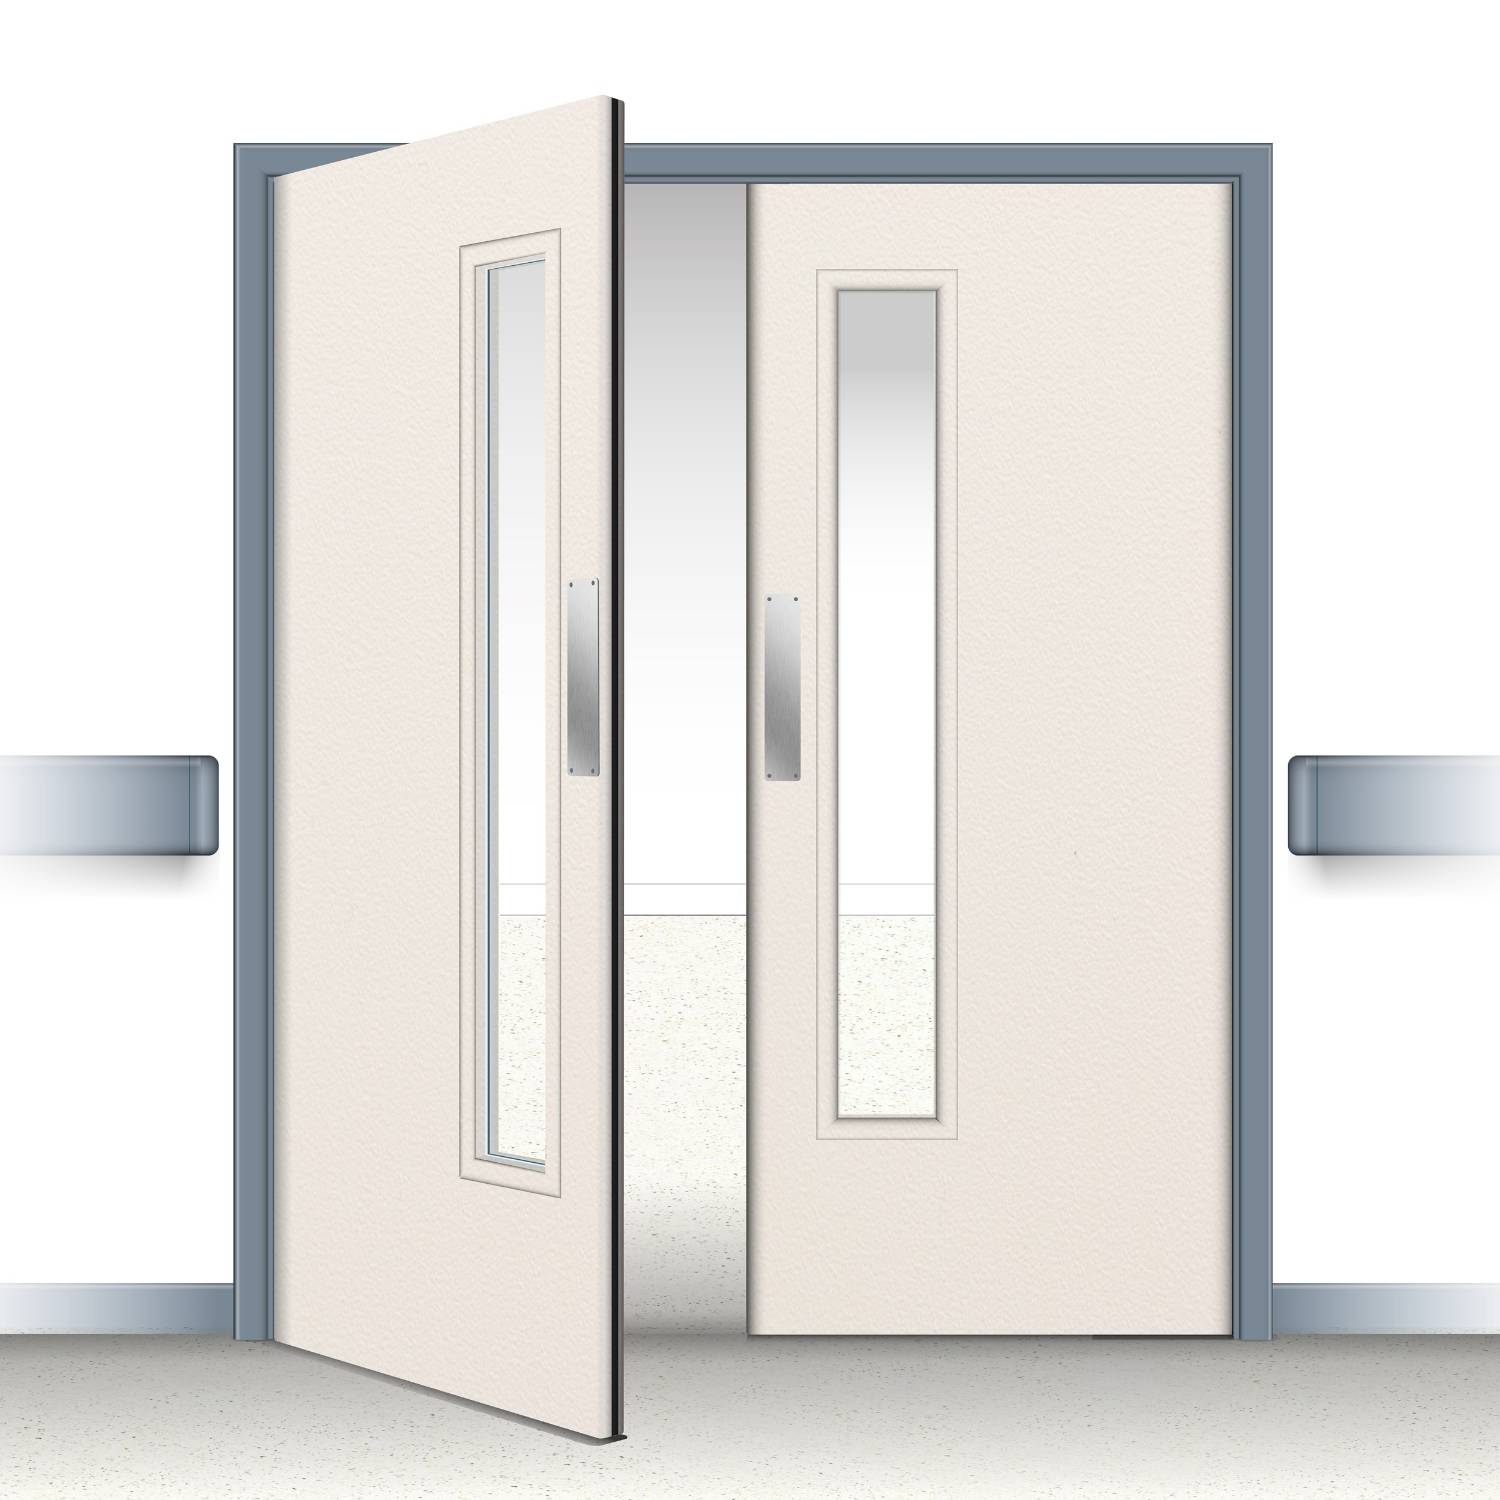 Postformed Double Swing Doorset - Vision Panel 4